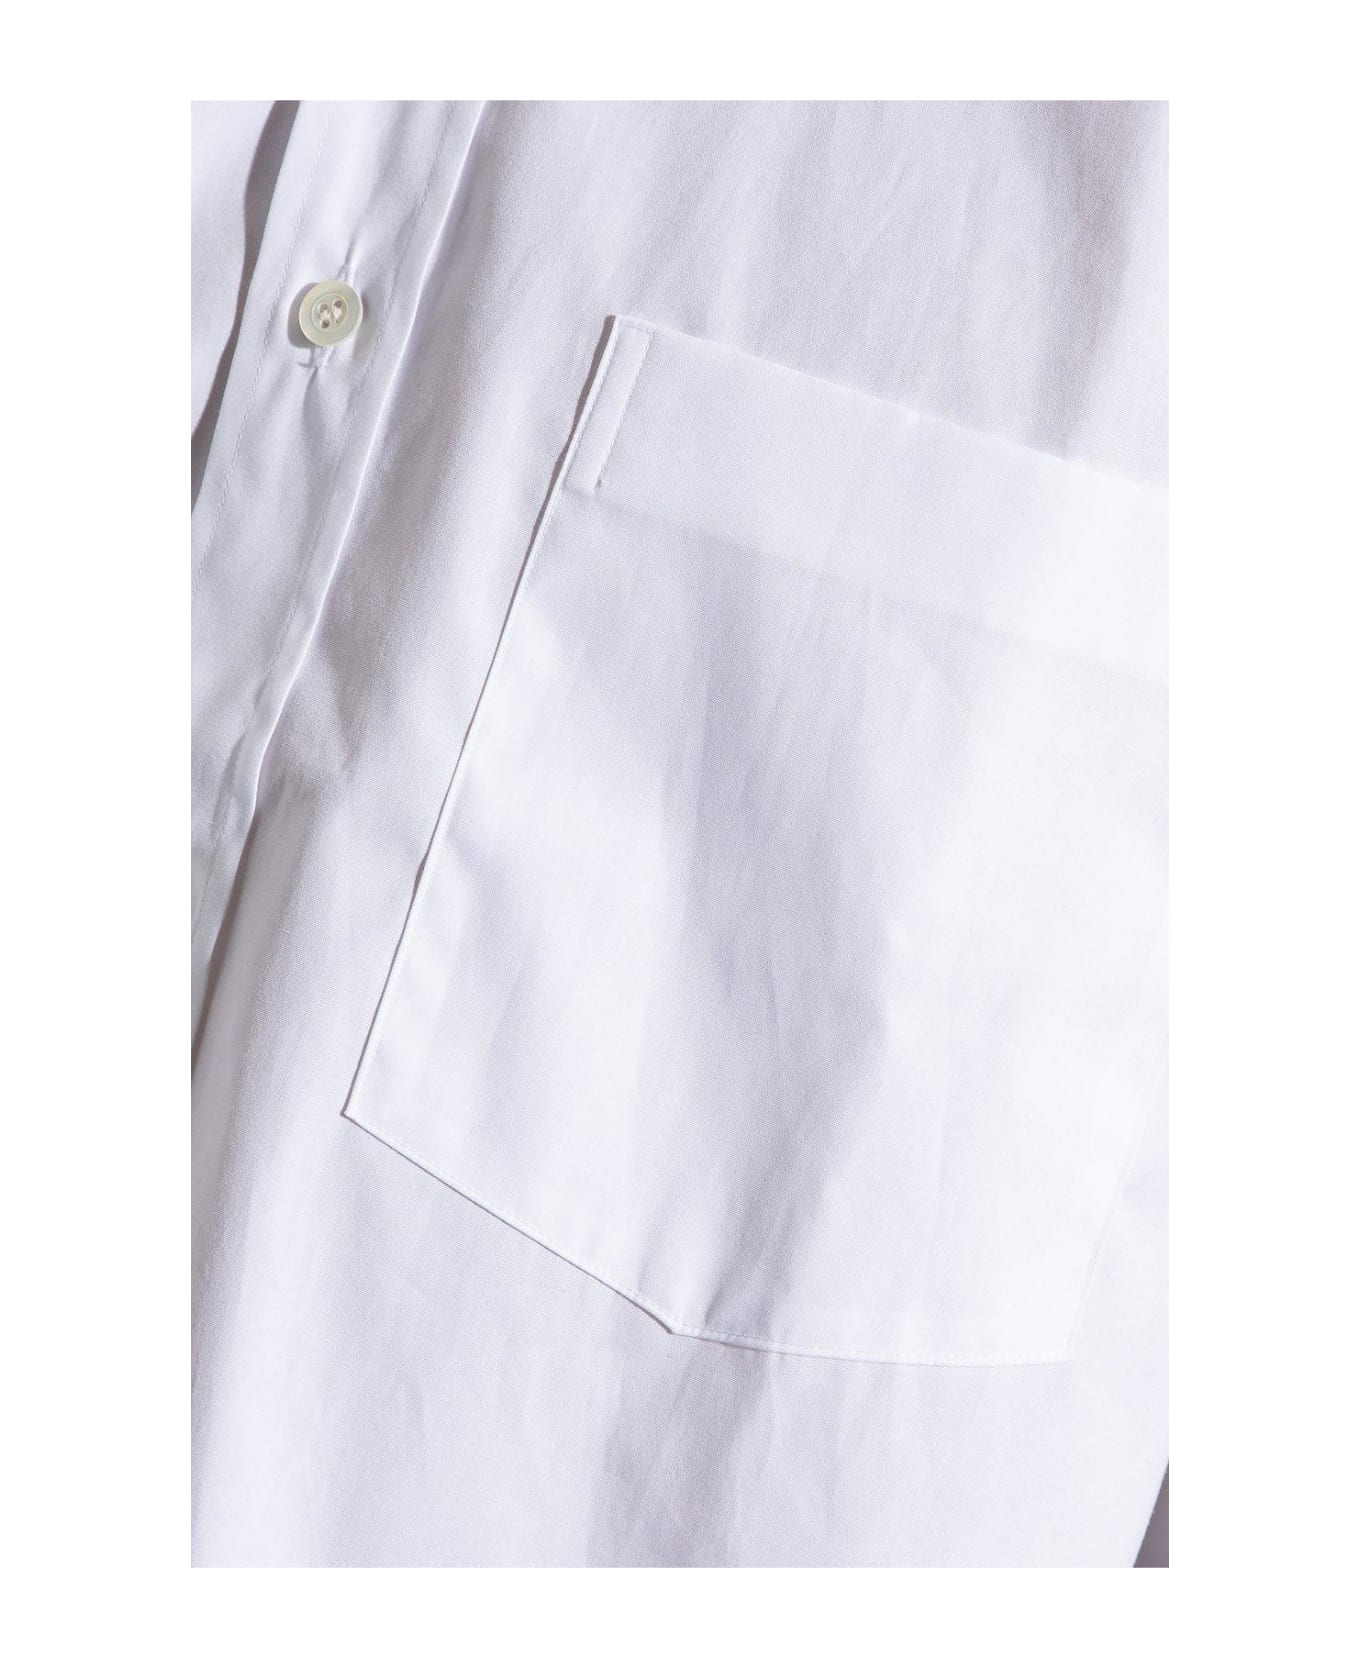 Dries Van Noten Buttoned Long-sleeved Shirt - Bianco